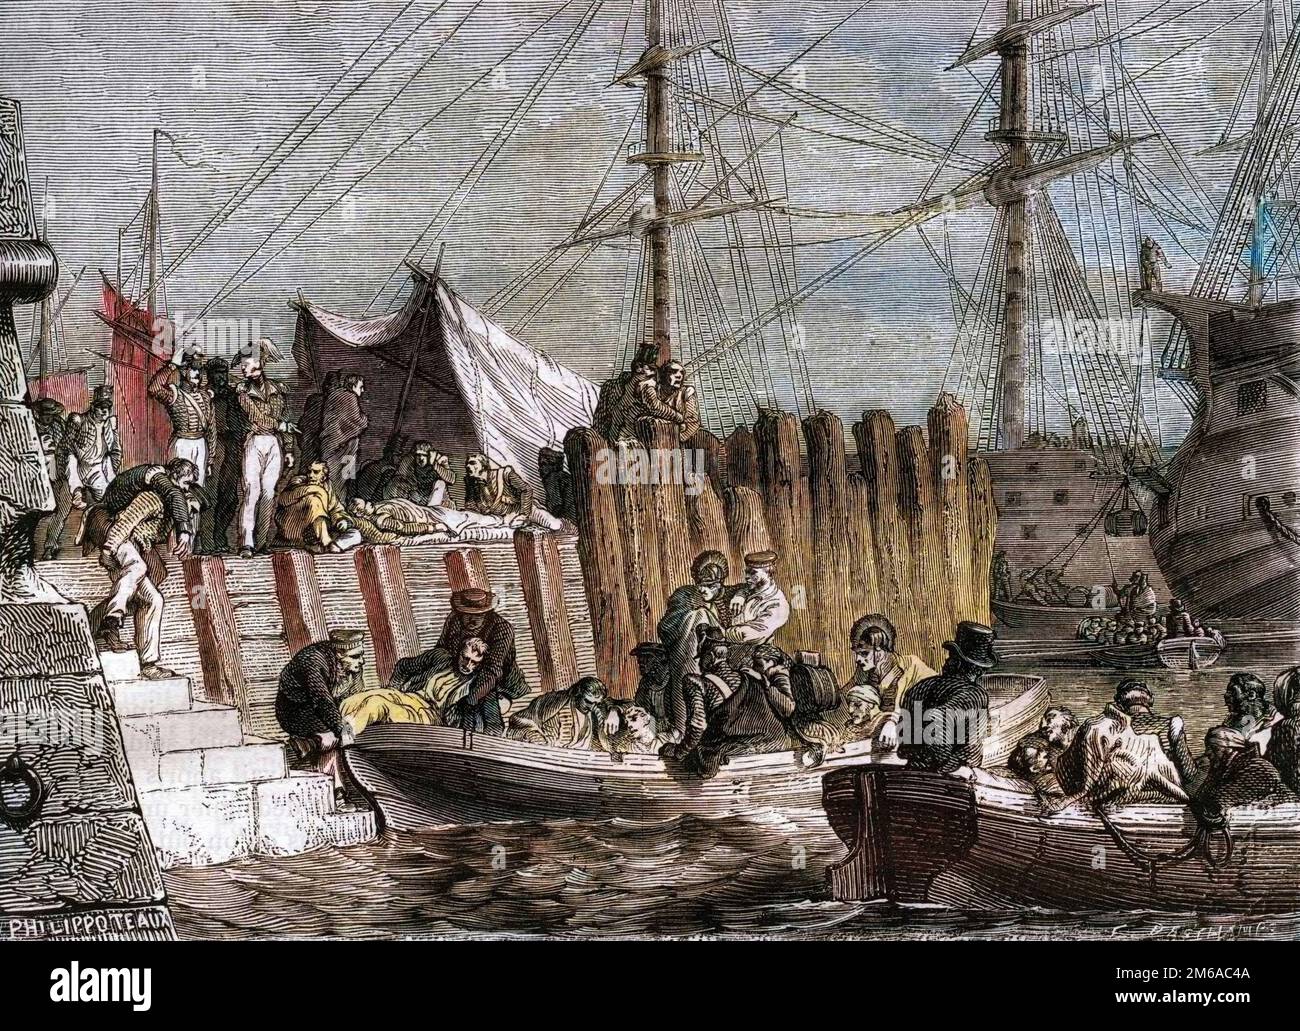 Napoleonic Wars - The English army leaves Walcheren Island 1809 - Les Anglais abandonnent l'ile de Walcheren au Pays-Bas en 1809 -  Gravure de 1879 Stock Photo